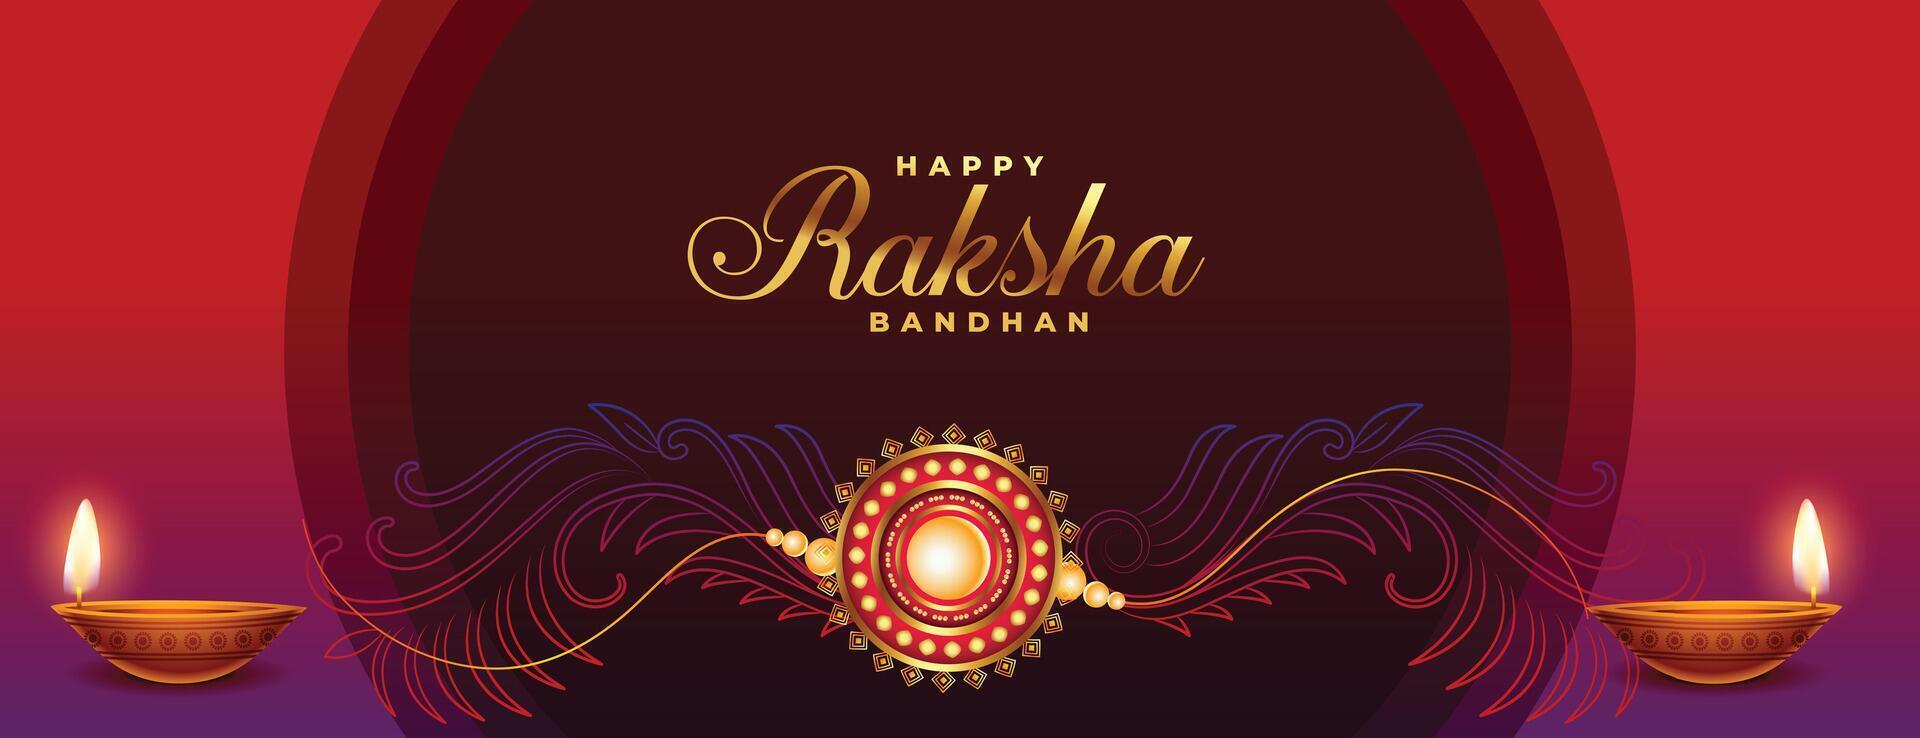 élégant floral style raksha bandhan Festival Contexte avec diya et rakhi conception vecteur